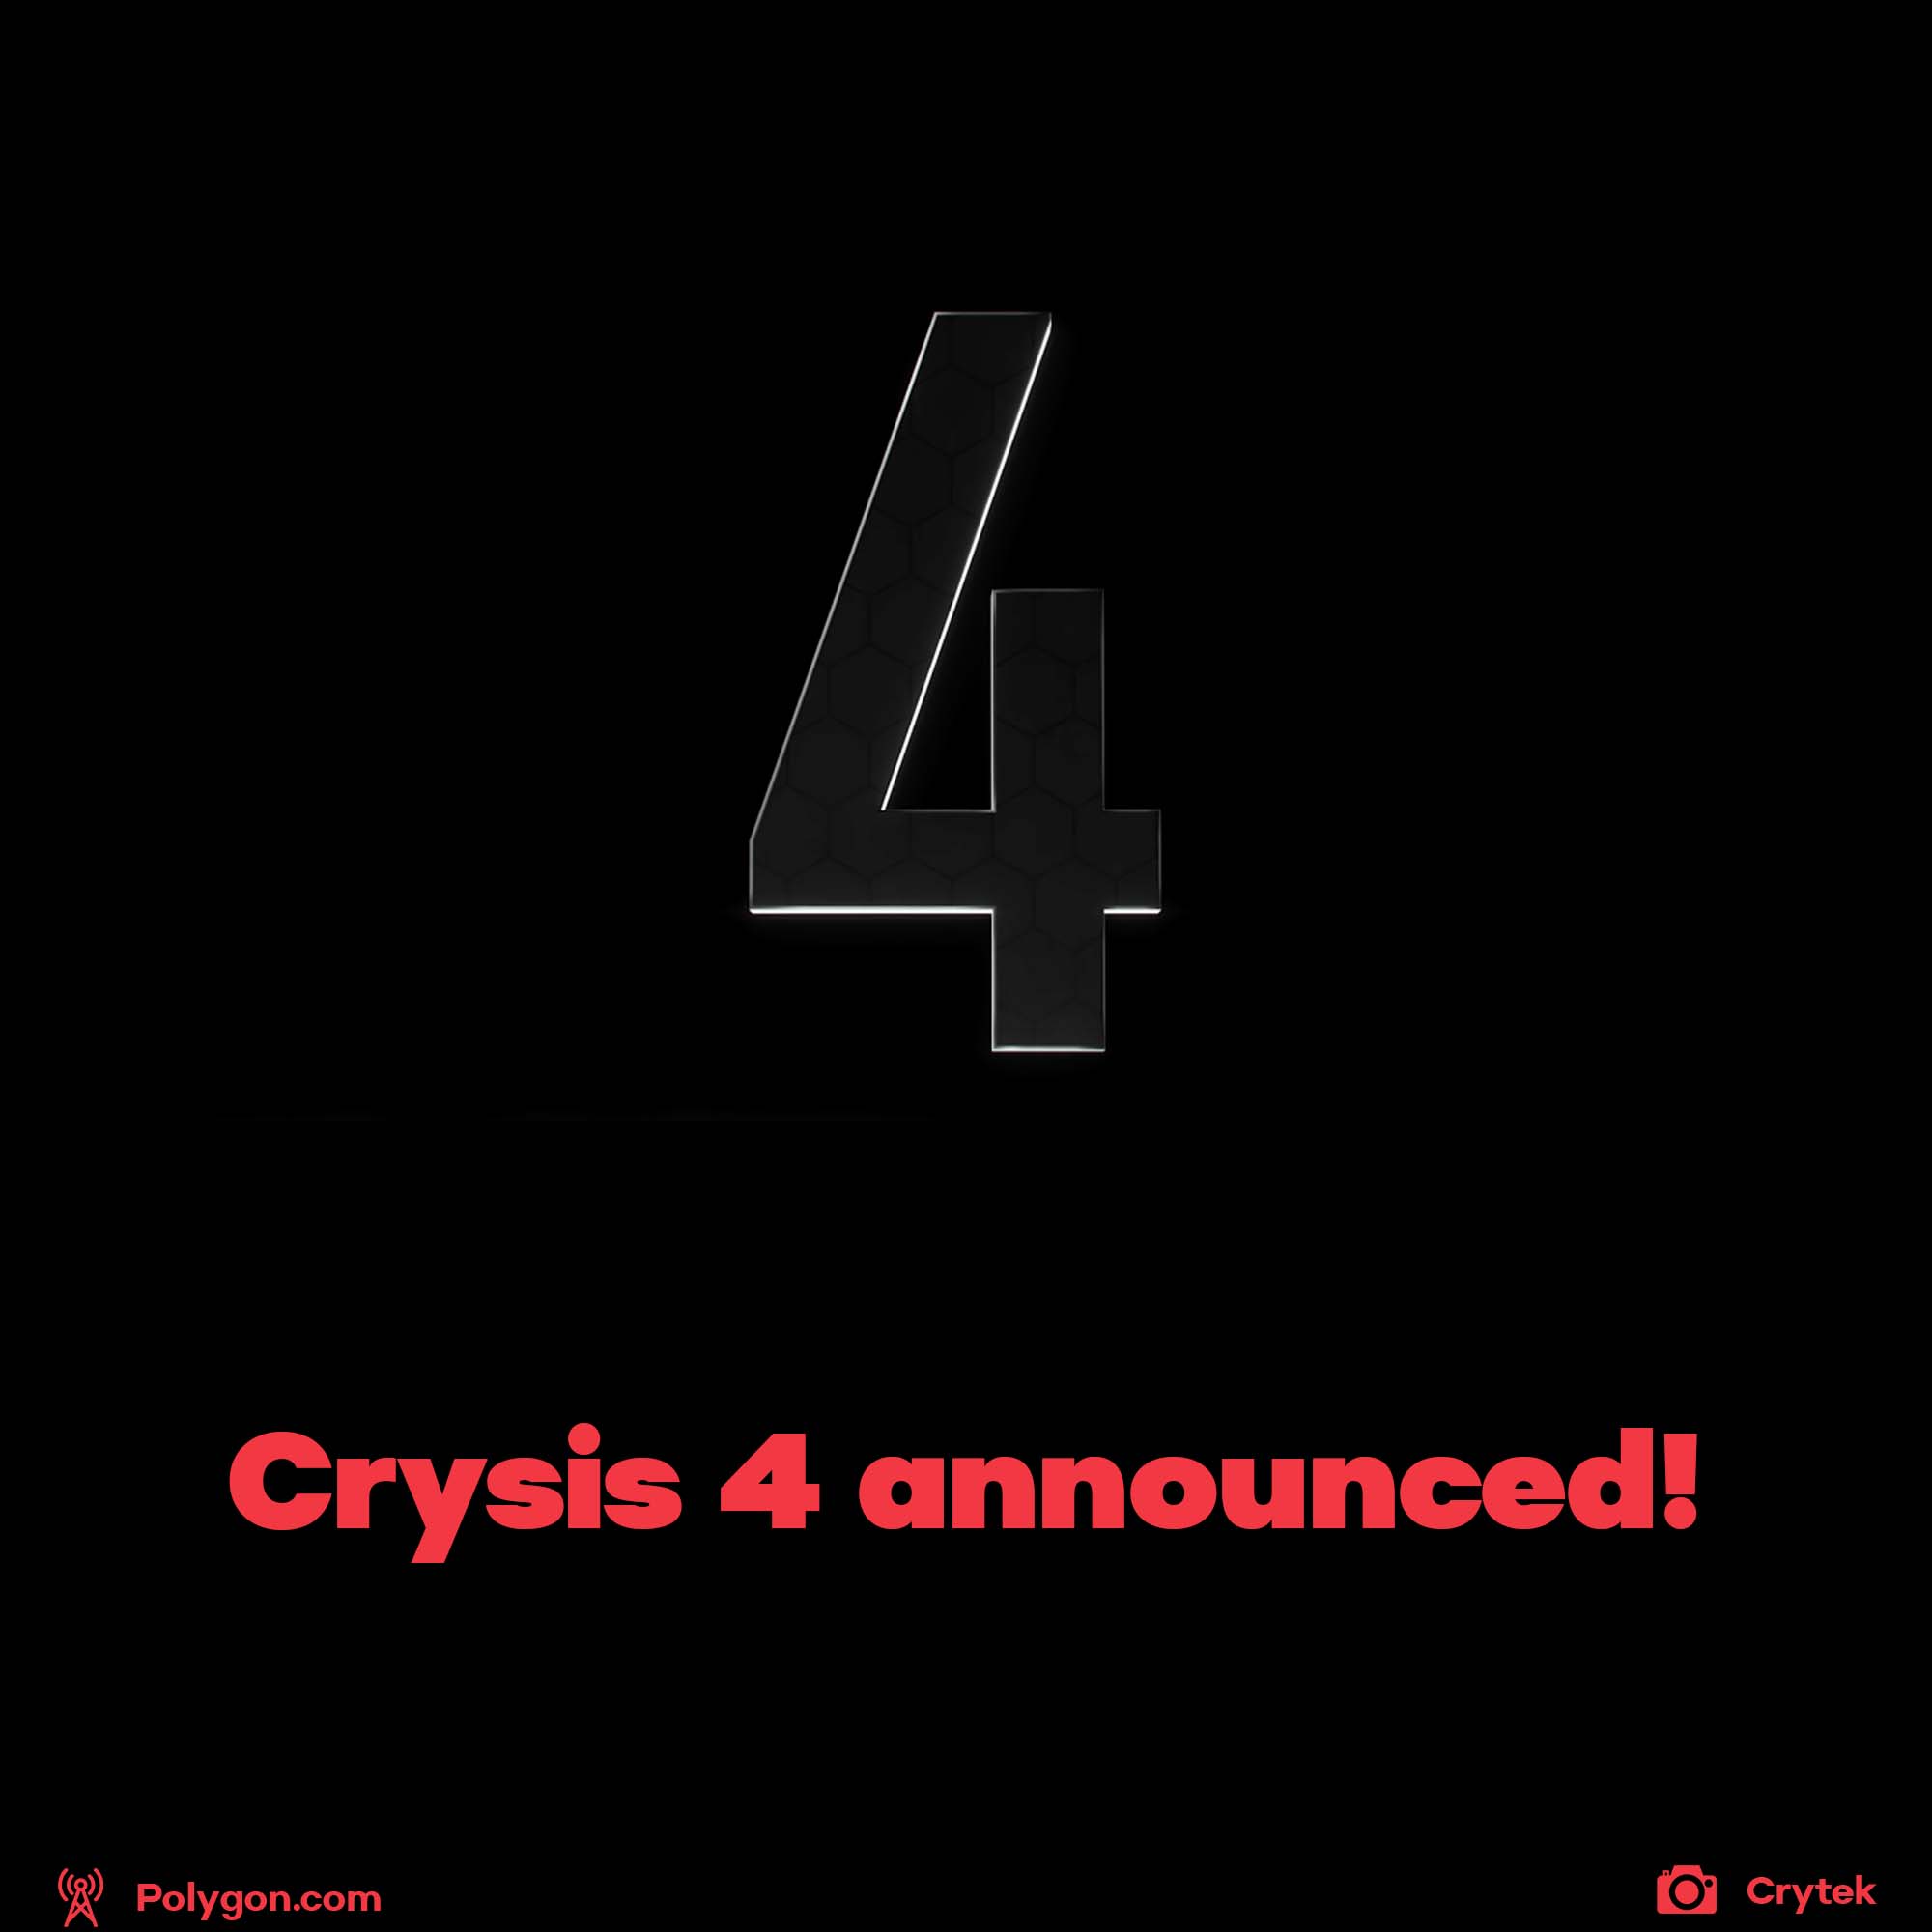 Crysis 4 announced